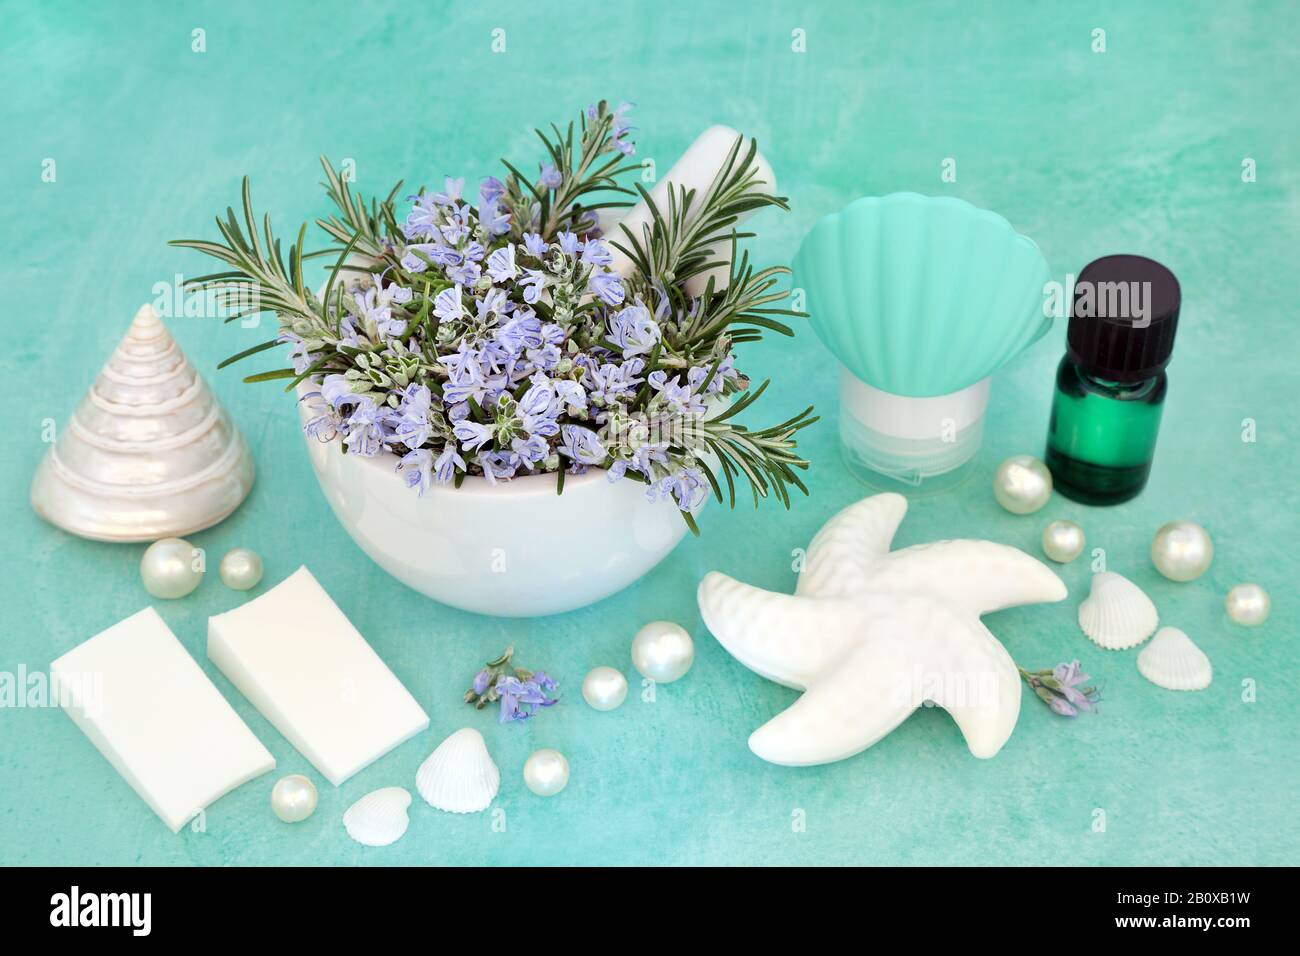 Rosmarin Kräuterhaut Pflege Beauty-Behandlung mit kosmetischen Produkten und dekorativen Seashells auf türkisfarbenem Hintergrund. Mit Anti-Aging-Vorteilen. Stockfoto